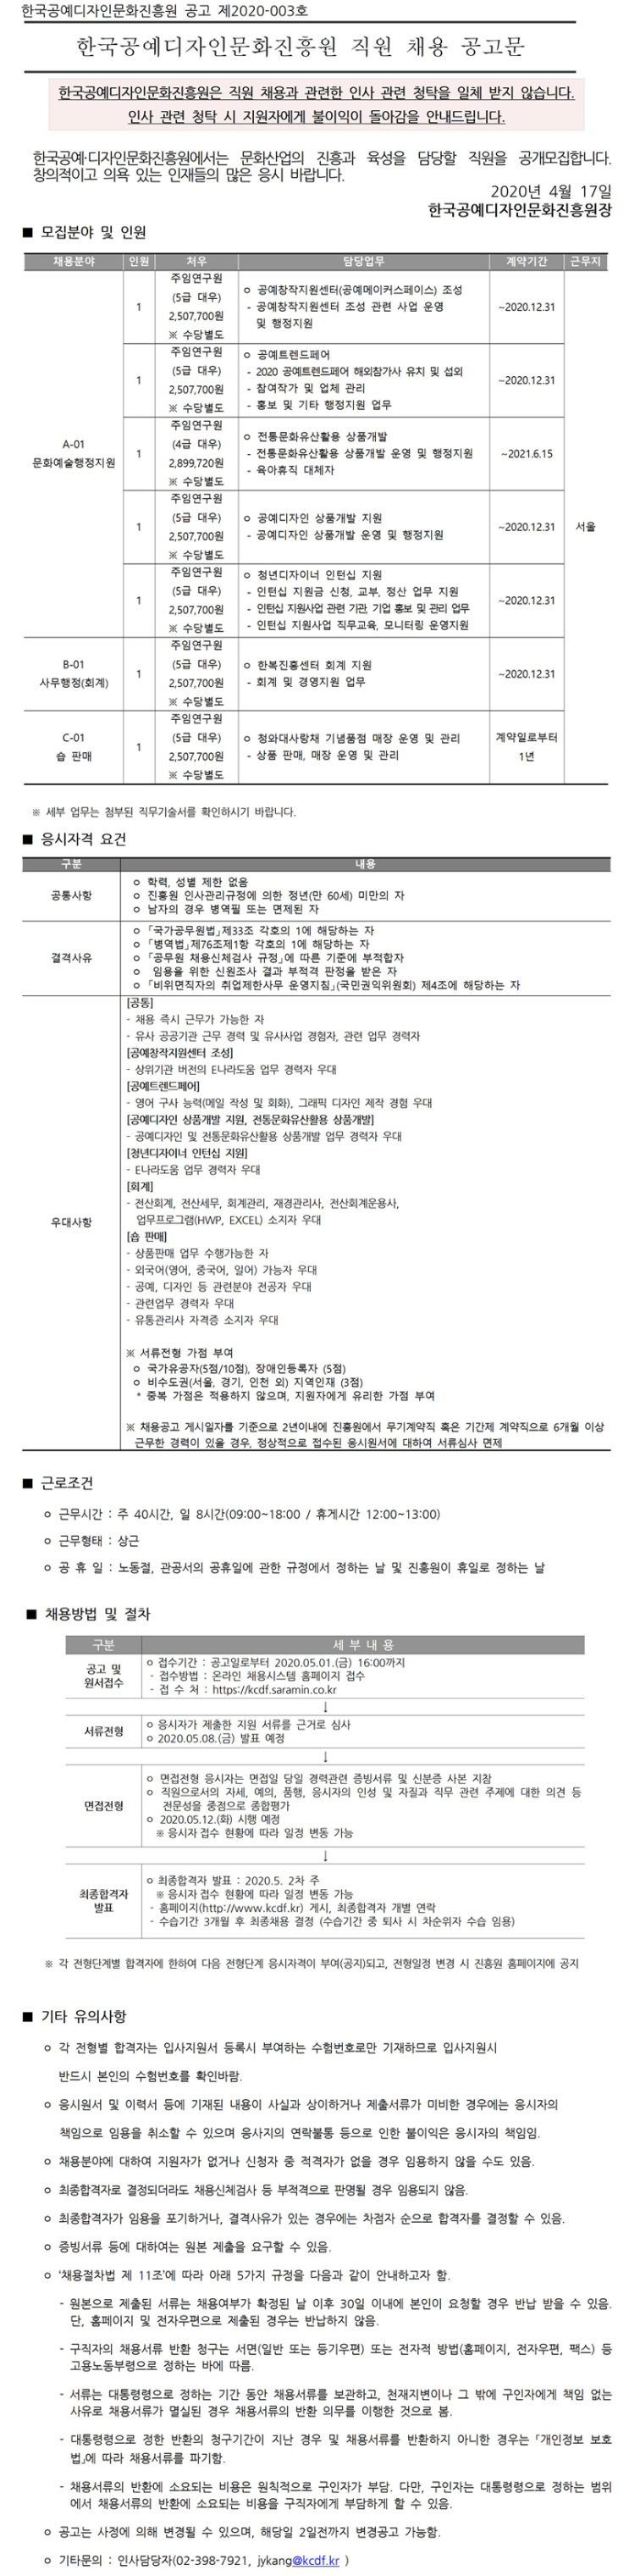 [채용][한국공예디자인문화진흥원] [2020-003] KCDF 직원(계약직) 채용 공고